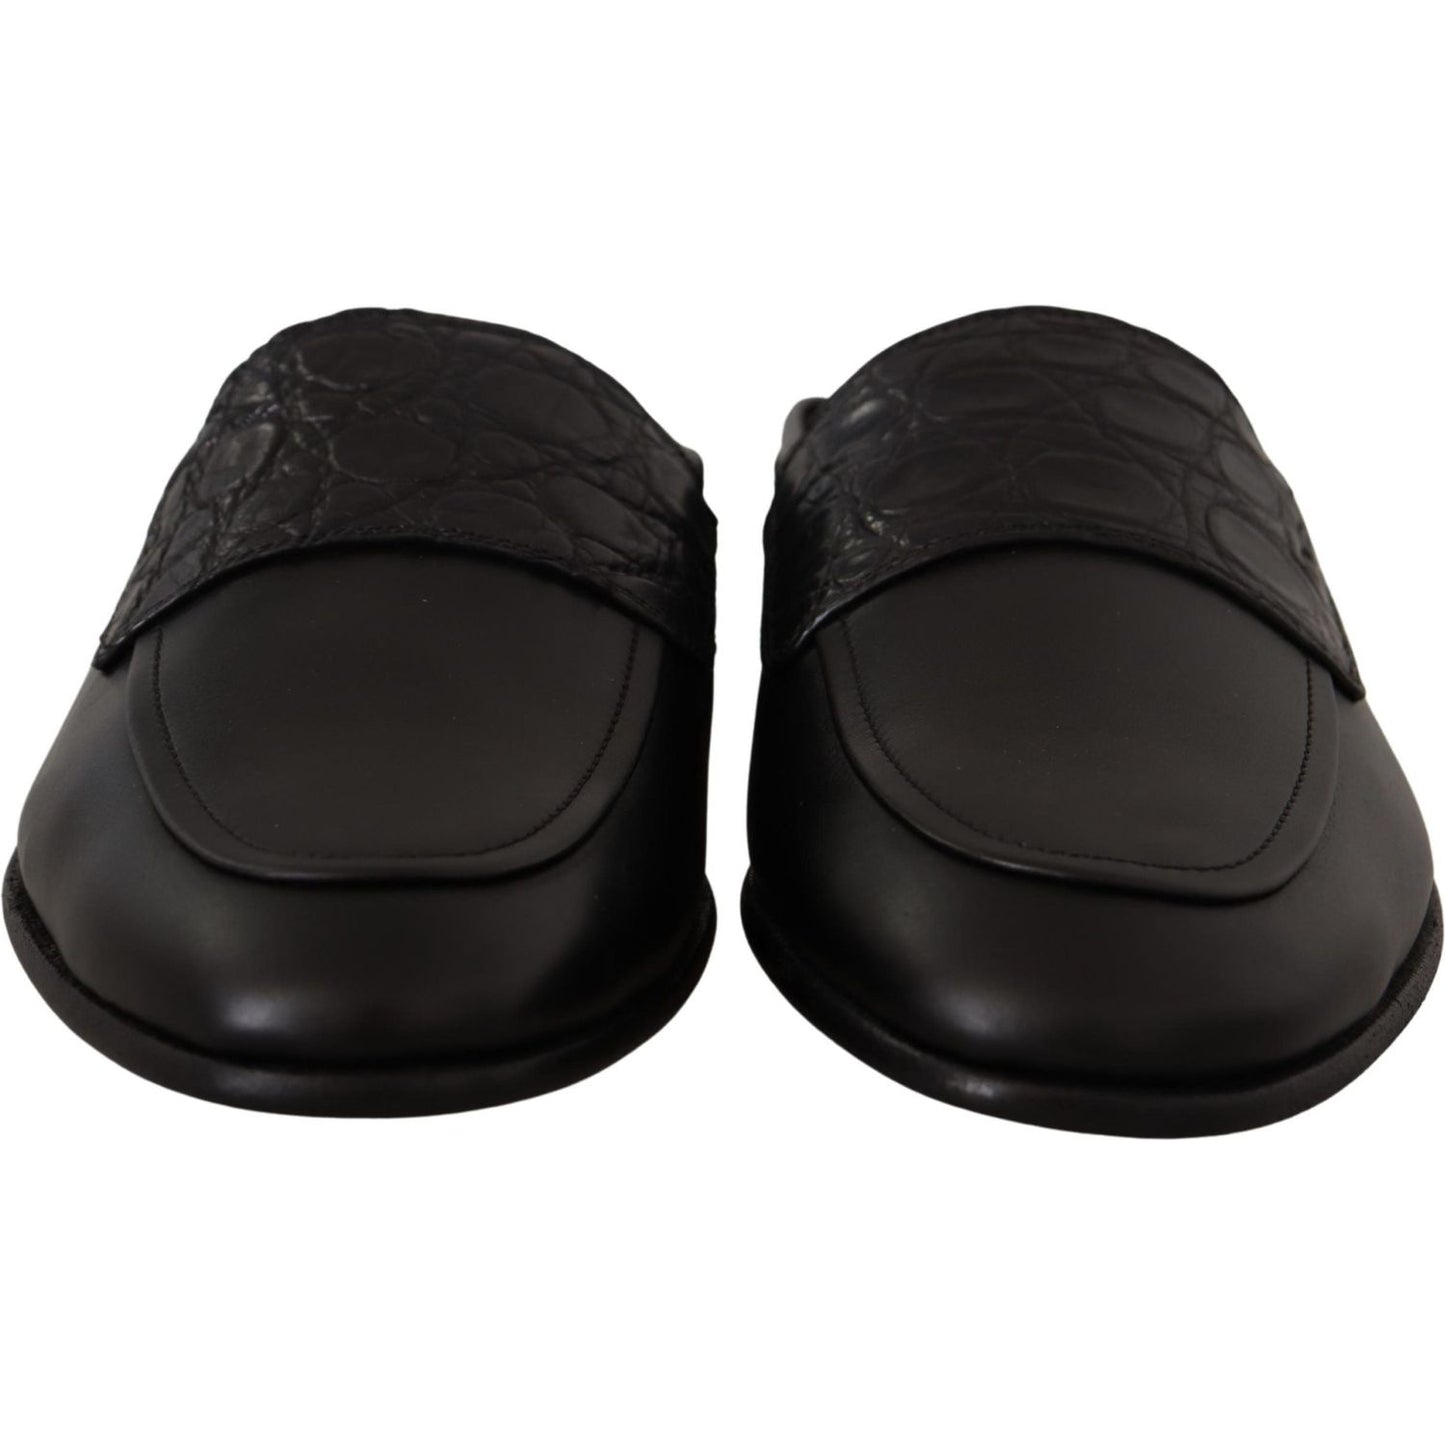 Dolce & Gabbana Exquisite Black & Burgundy Leather Slides black-leather-caiman-sandals-slides-slip-shoes IMG_1668-scaled-3d143714-5a5.jpg